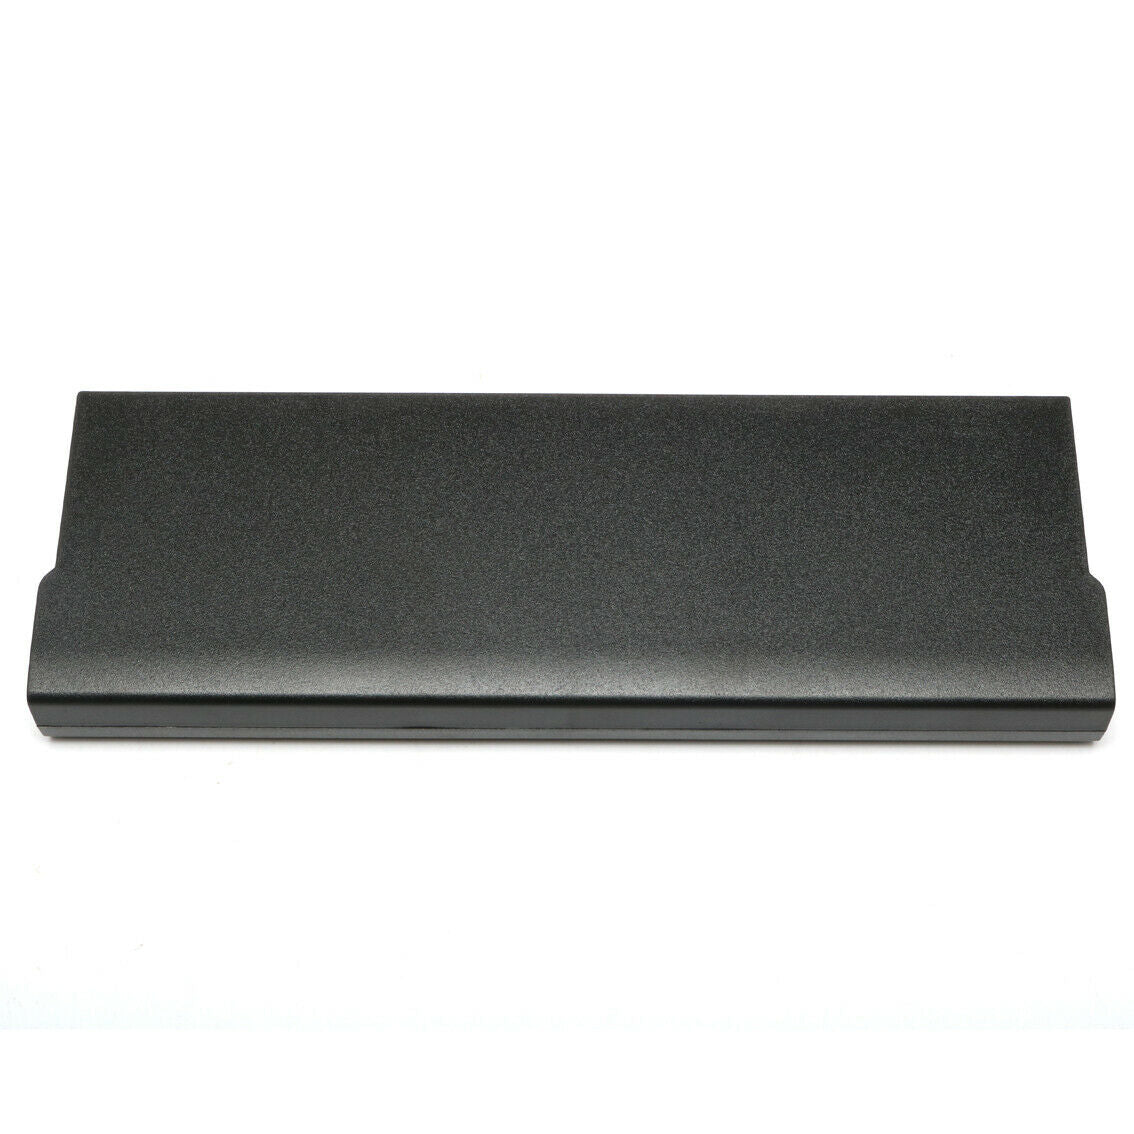 Original M5Y0X 71R31 NHXVW T54FJ N3X1D compatible with Dell Latitude E6420 E6520 E5420 E5520 E6430 Korea Cell Laptop Battery